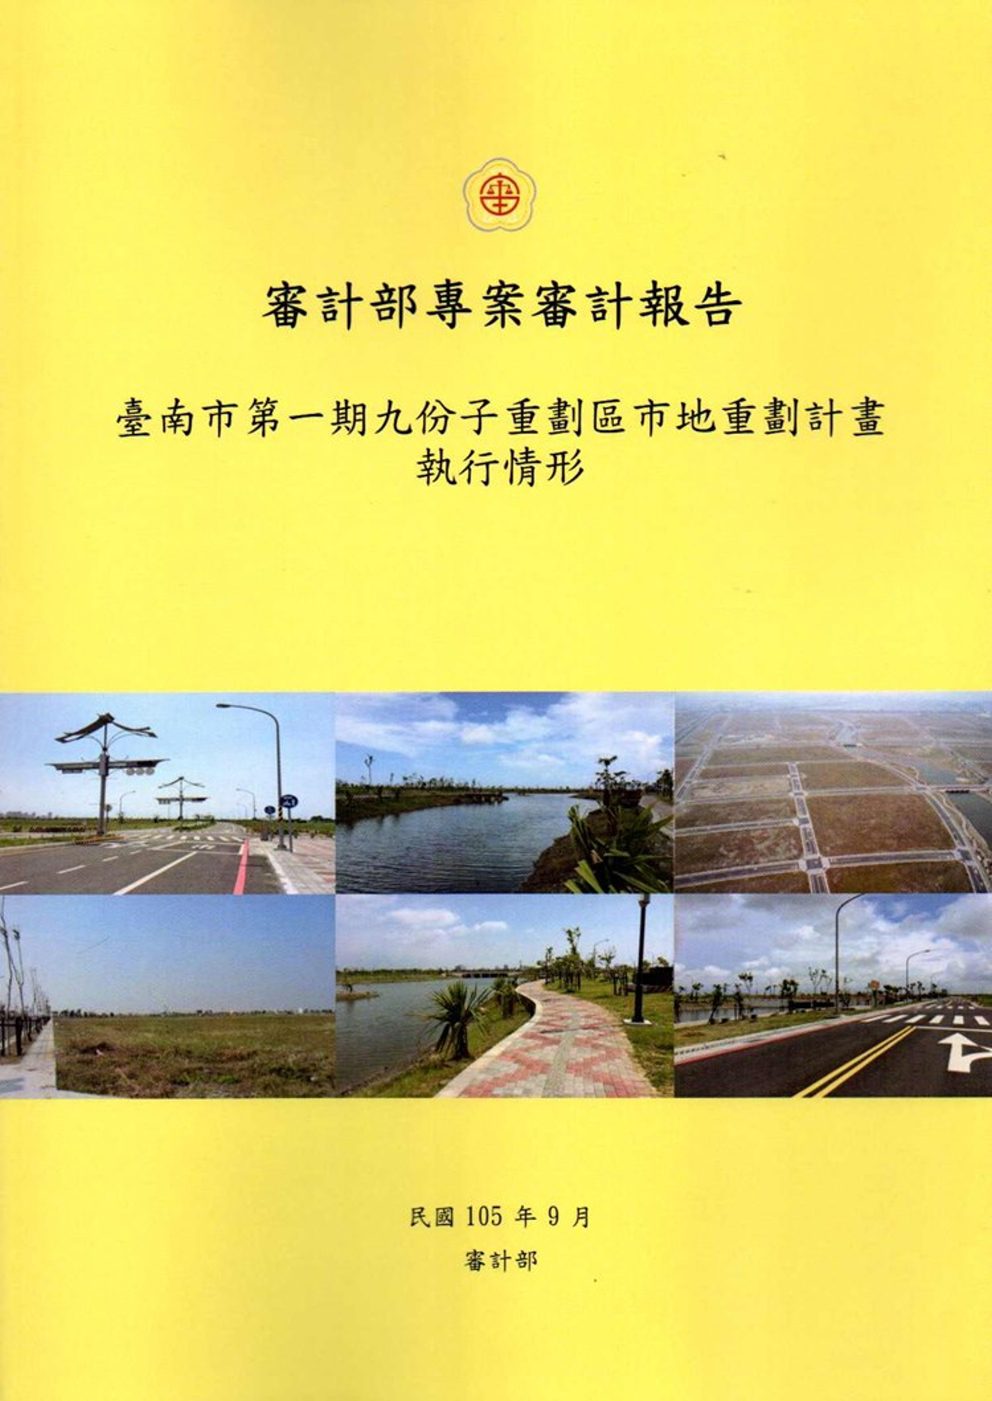 臺南市第一期九份子重劃區市地重劃計畫執行情形